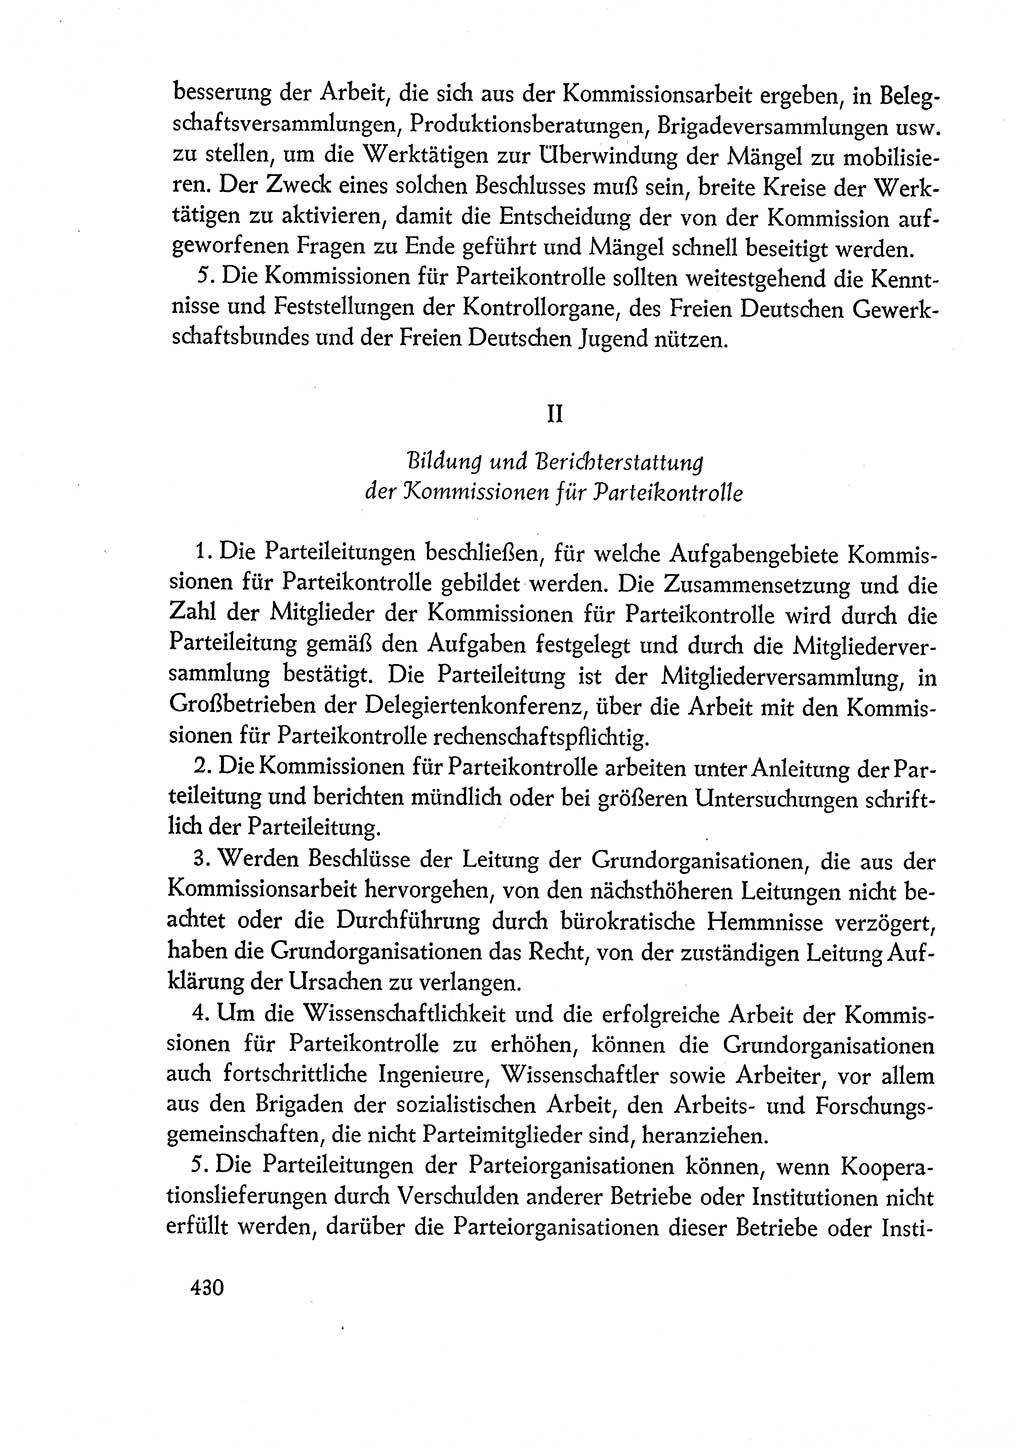 Dokumente der Sozialistischen Einheitspartei Deutschlands (SED) [Deutsche Demokratische Republik (DDR)] 1960-1961, Seite 430 (Dok. SED DDR 1960-1961, S. 430)